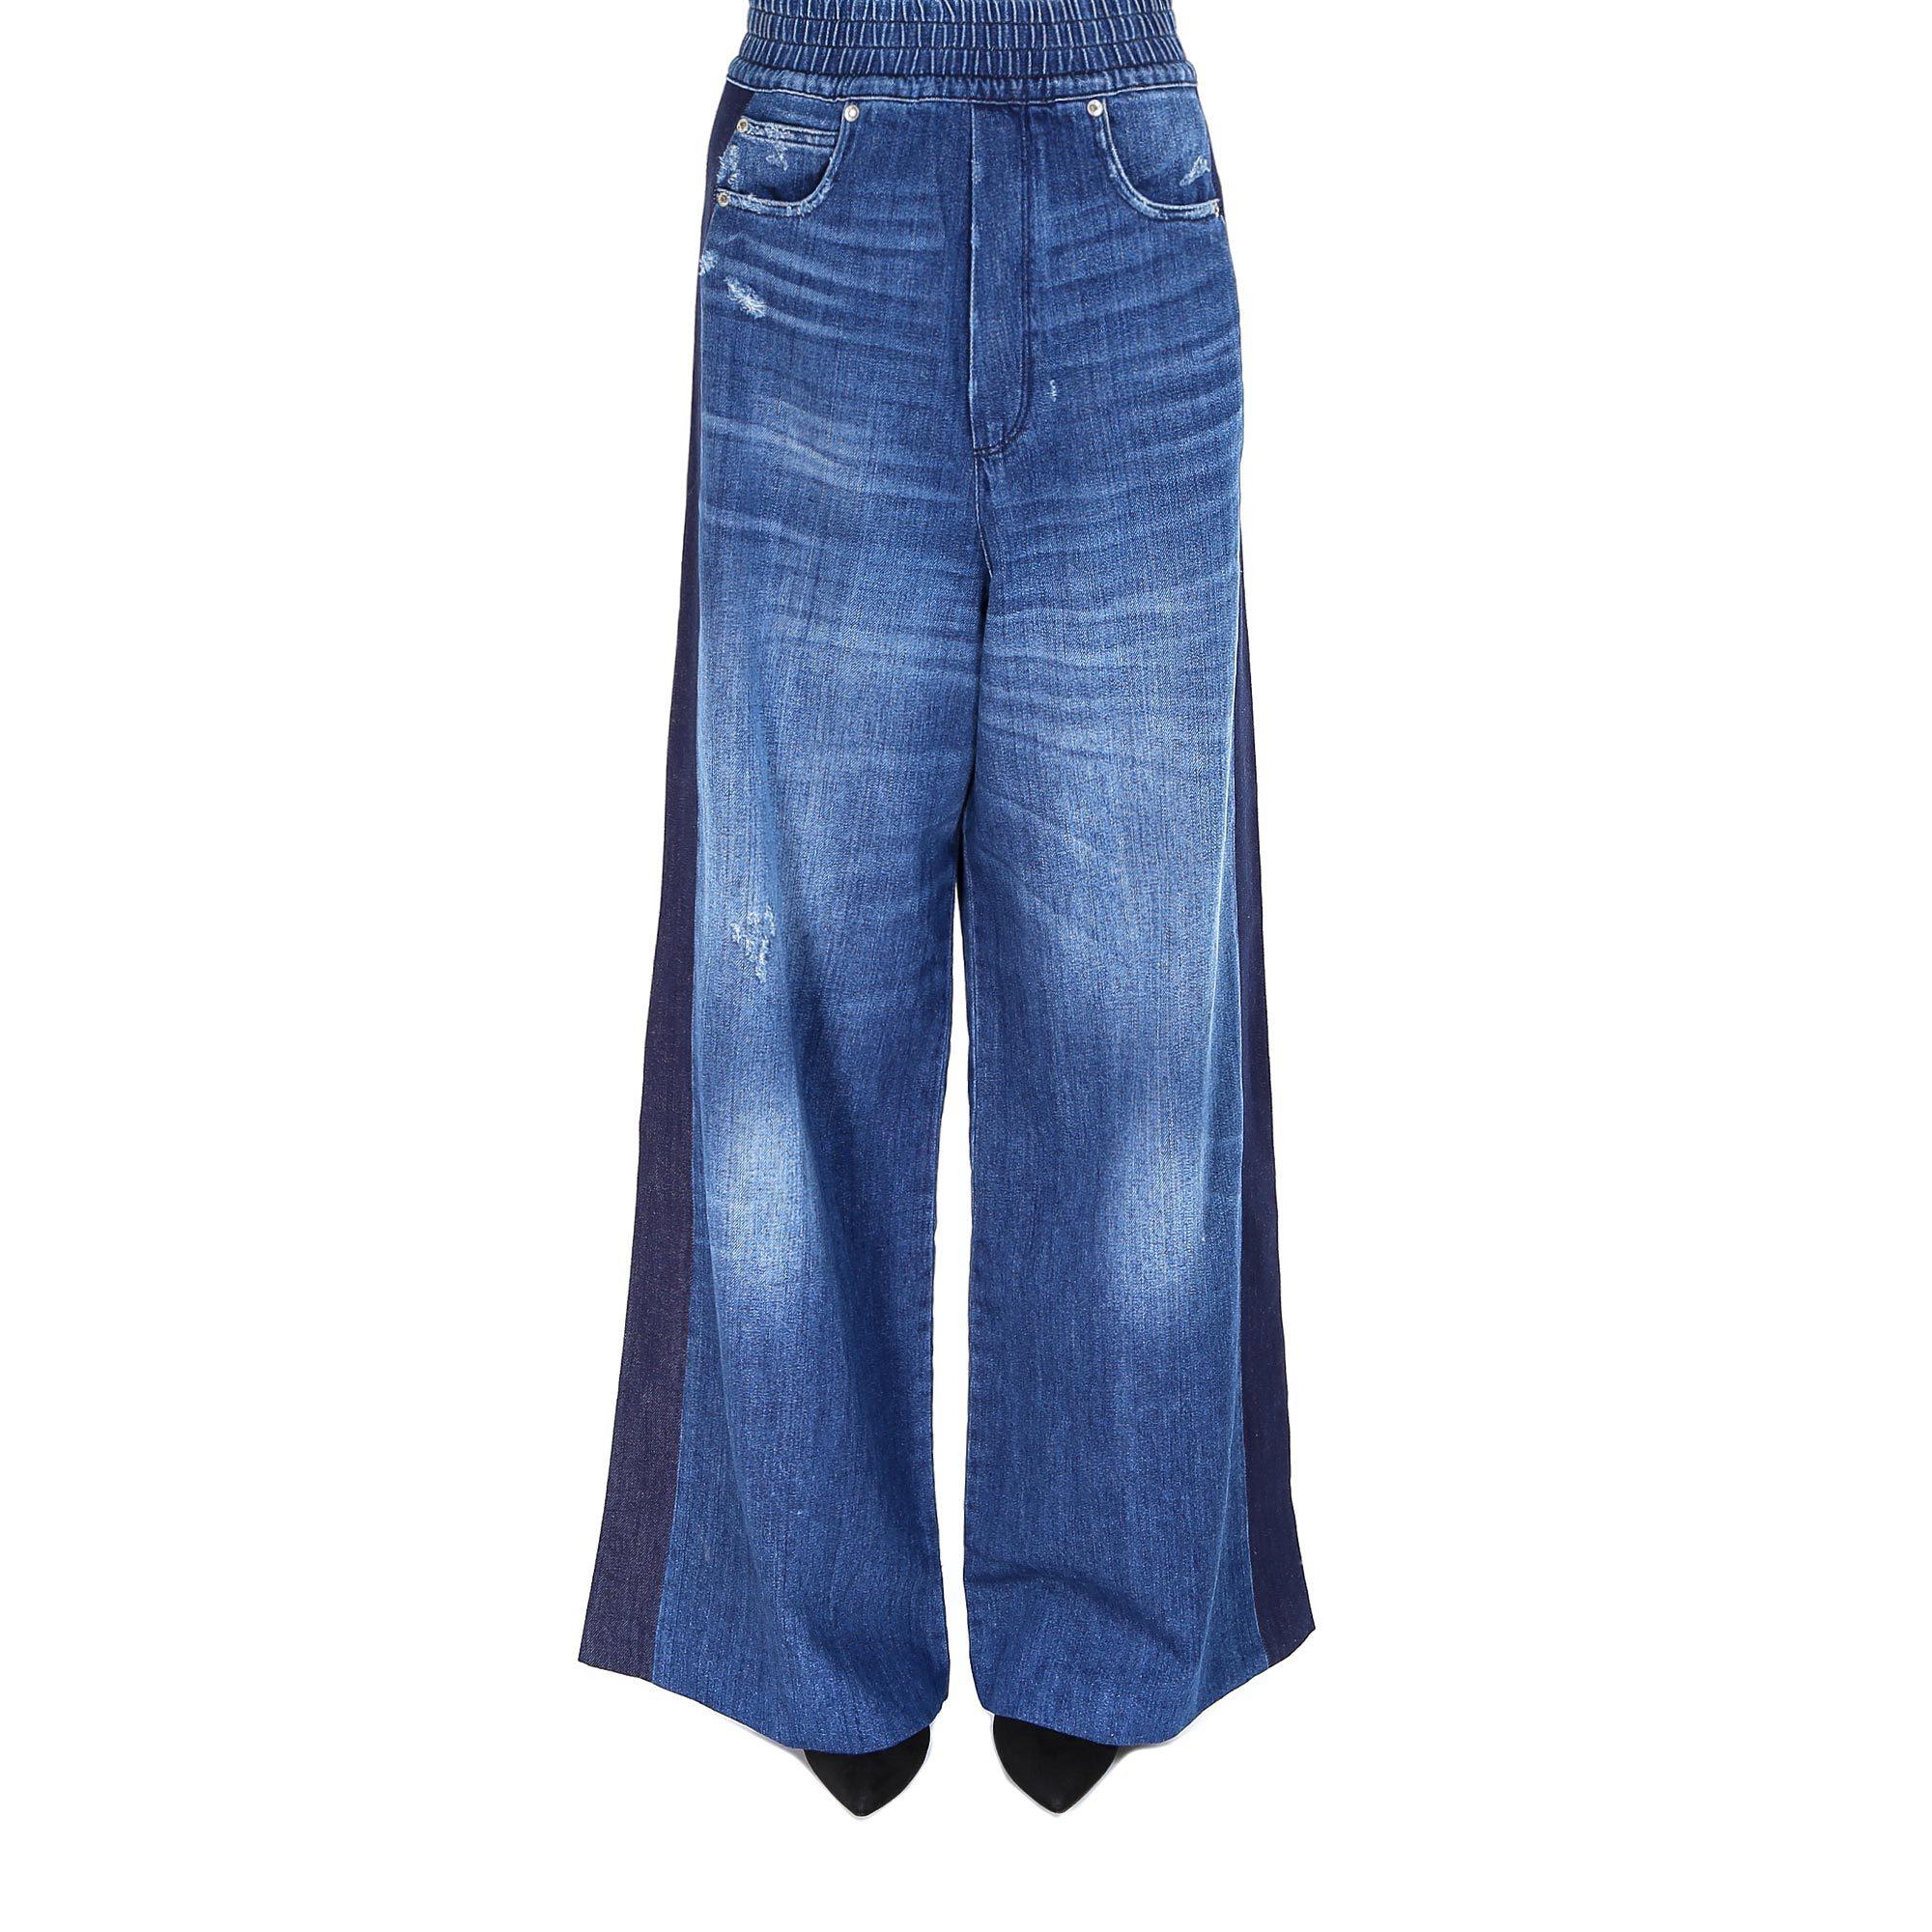 Golden Goose Deluxe Brand Wide-leg Denim Jeans in Beige (Natural) - Lyst